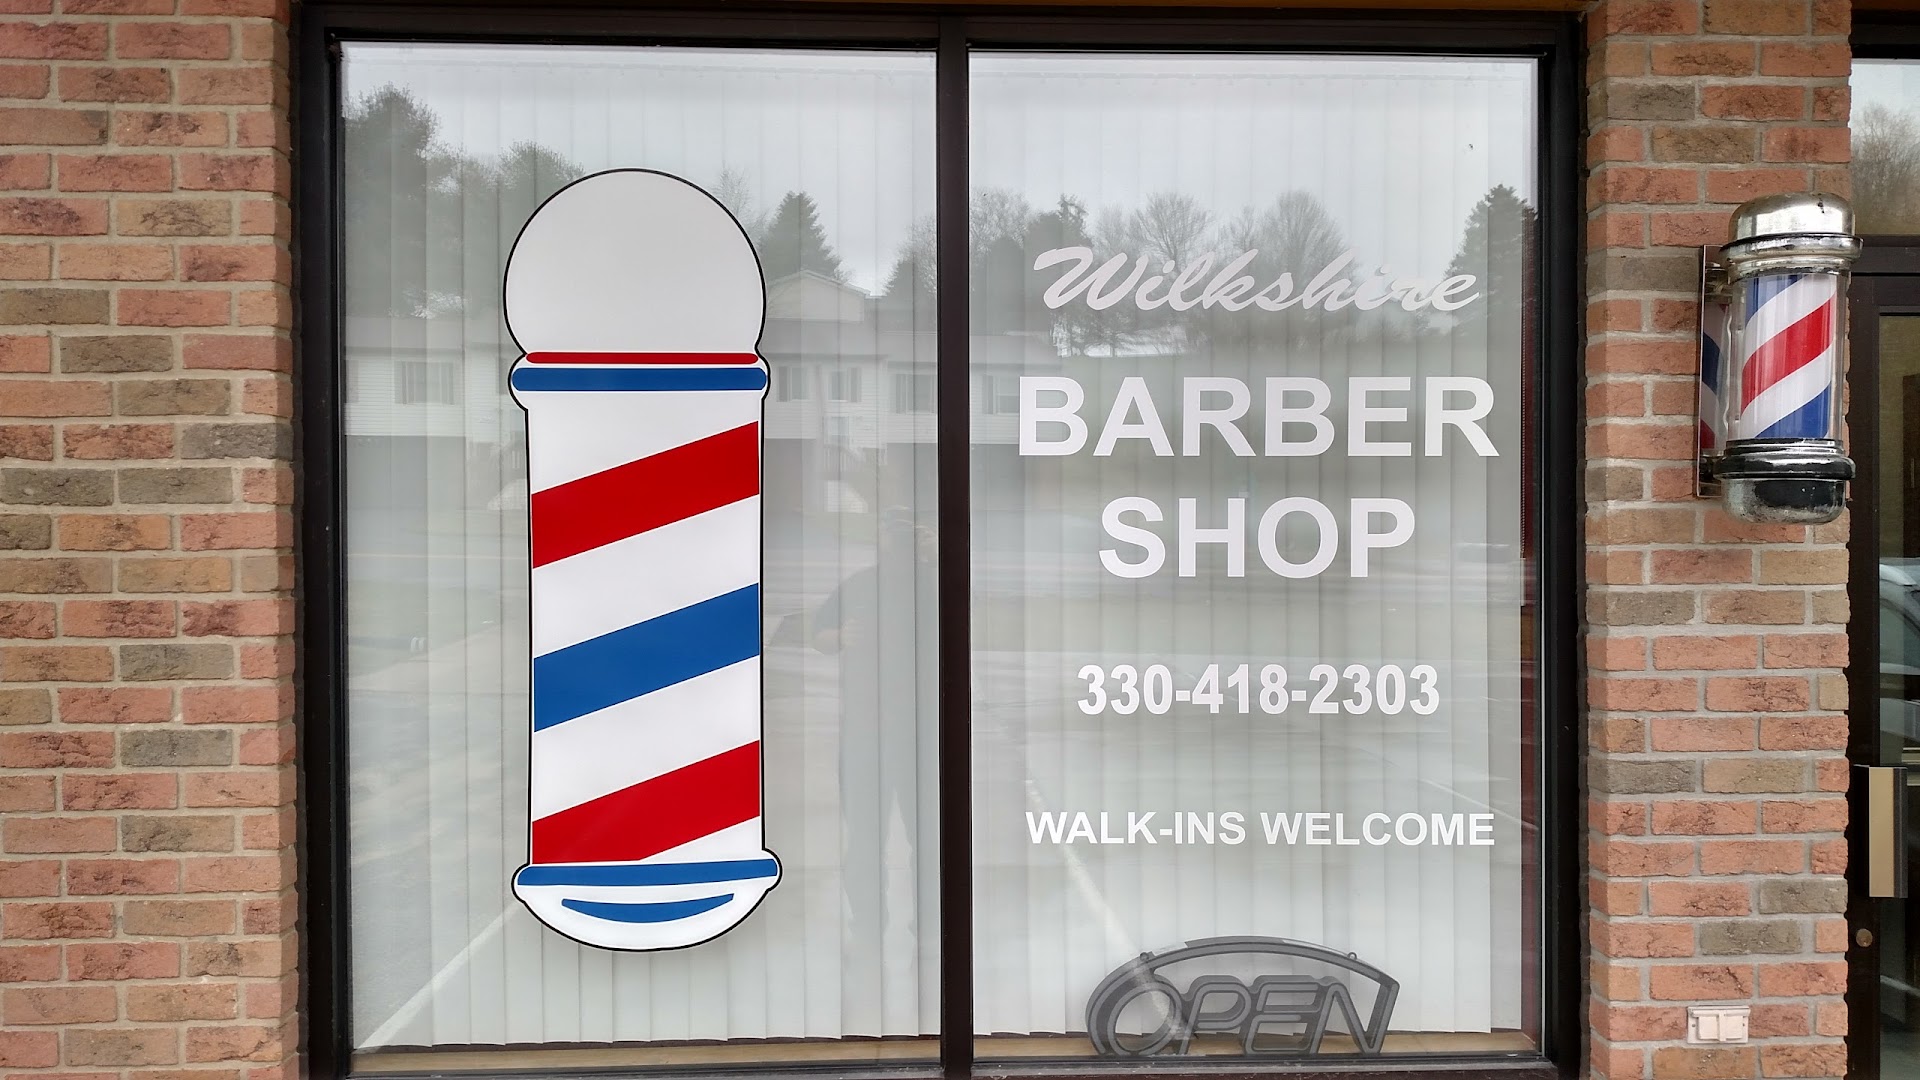 Wilkshire Barbershop